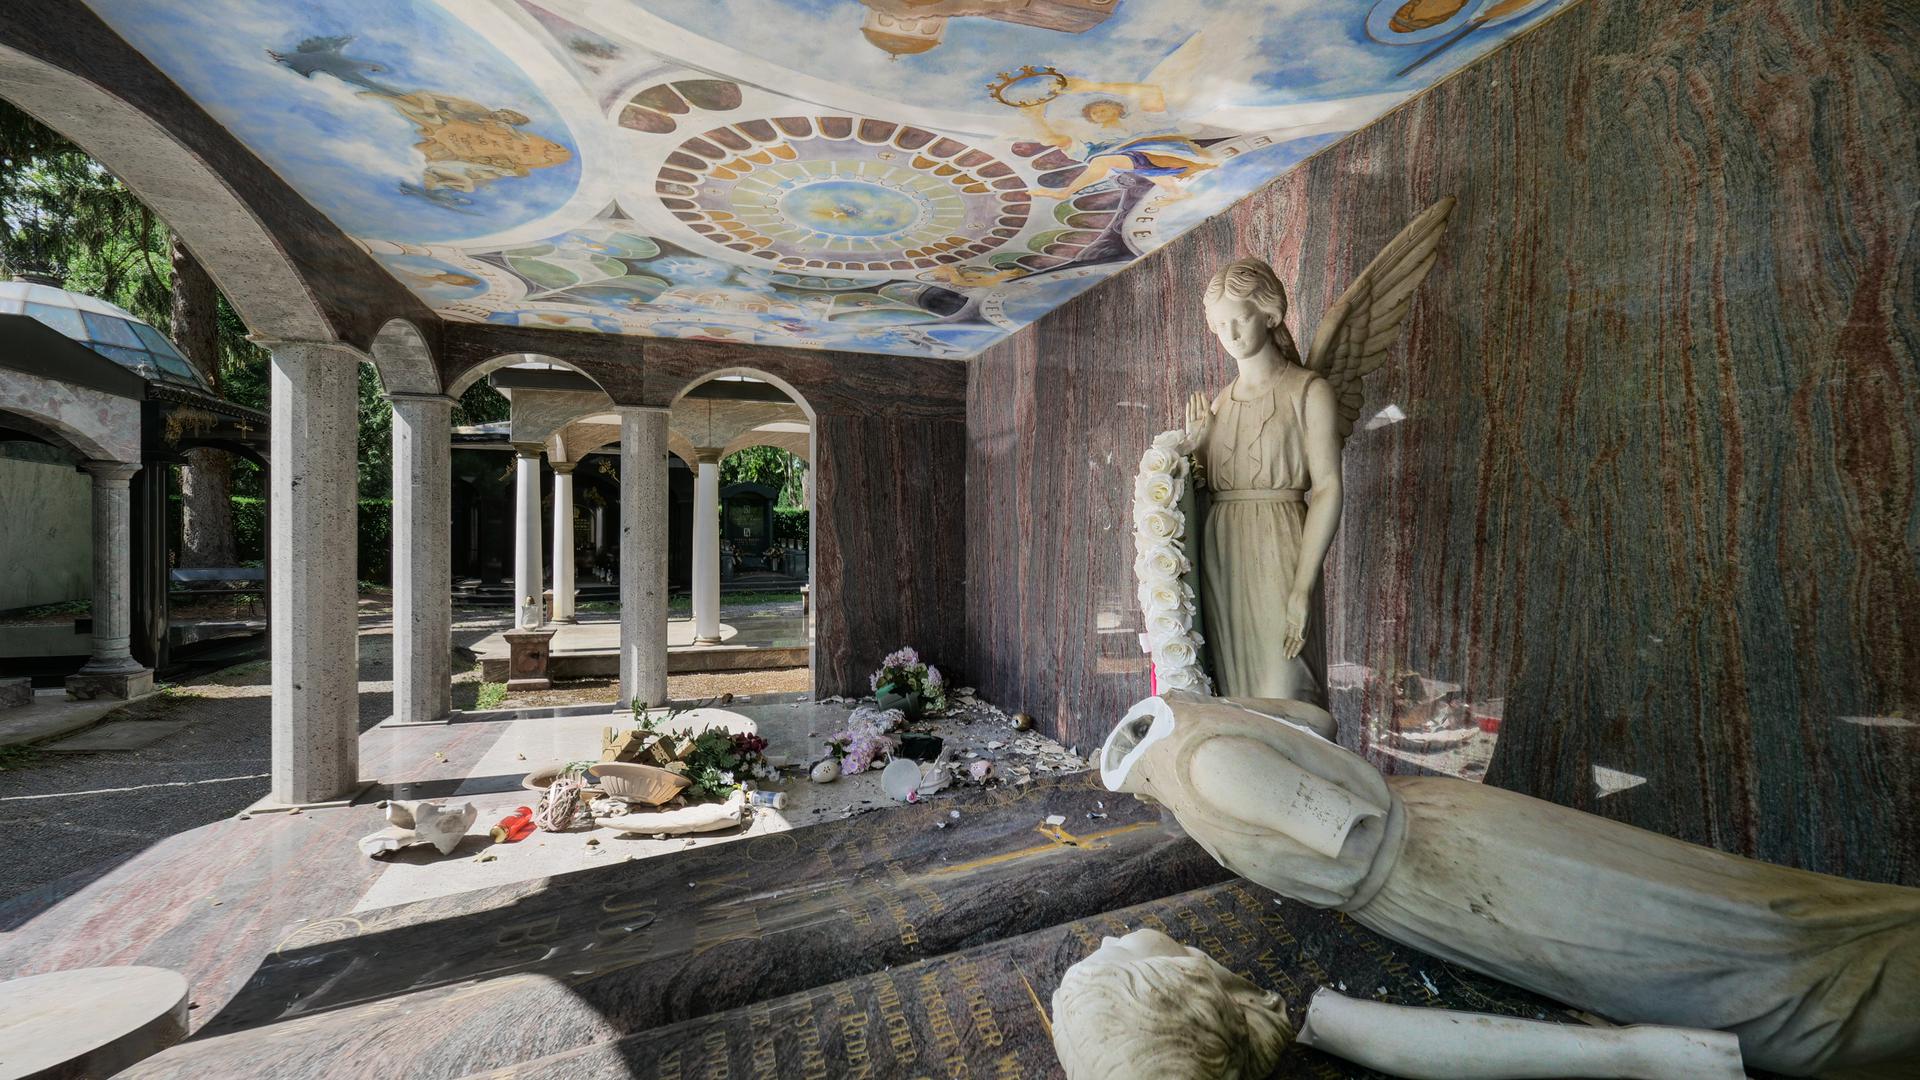 Zertrümmert: Das Mausoleum des Clanchefs einer Roma-Dynastie auf dem Hauptfriedhof wurde von Vandalen heimgesucht. Die Familie ist entsetzt, die Polizei ermittelt.